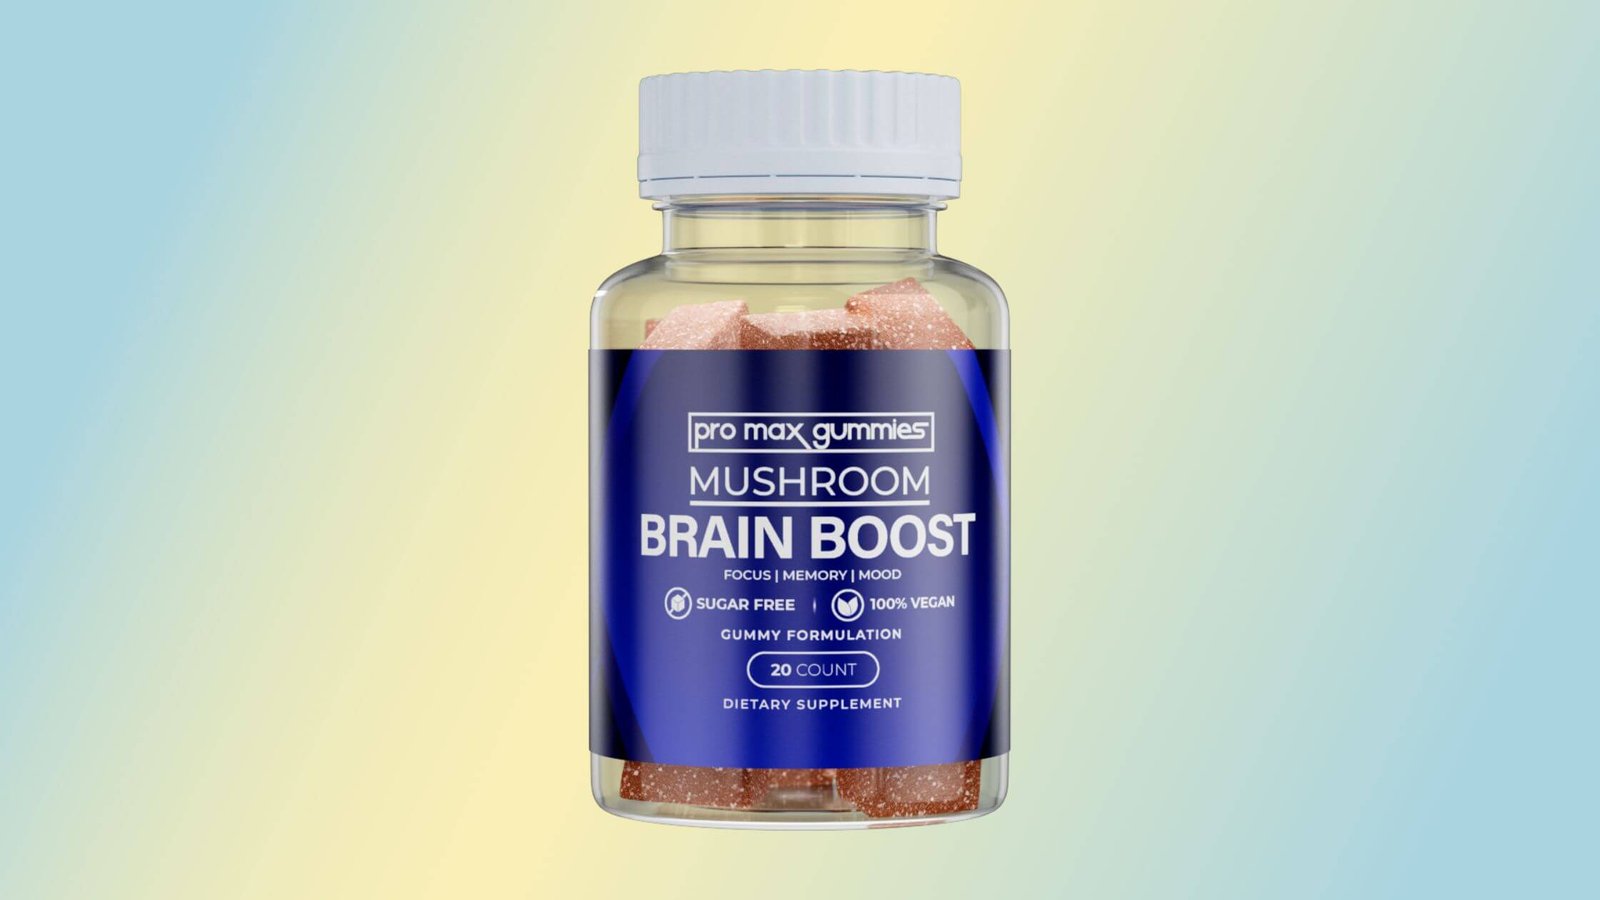 Mushroom Brain Boost Pro Max Gummies Reviews